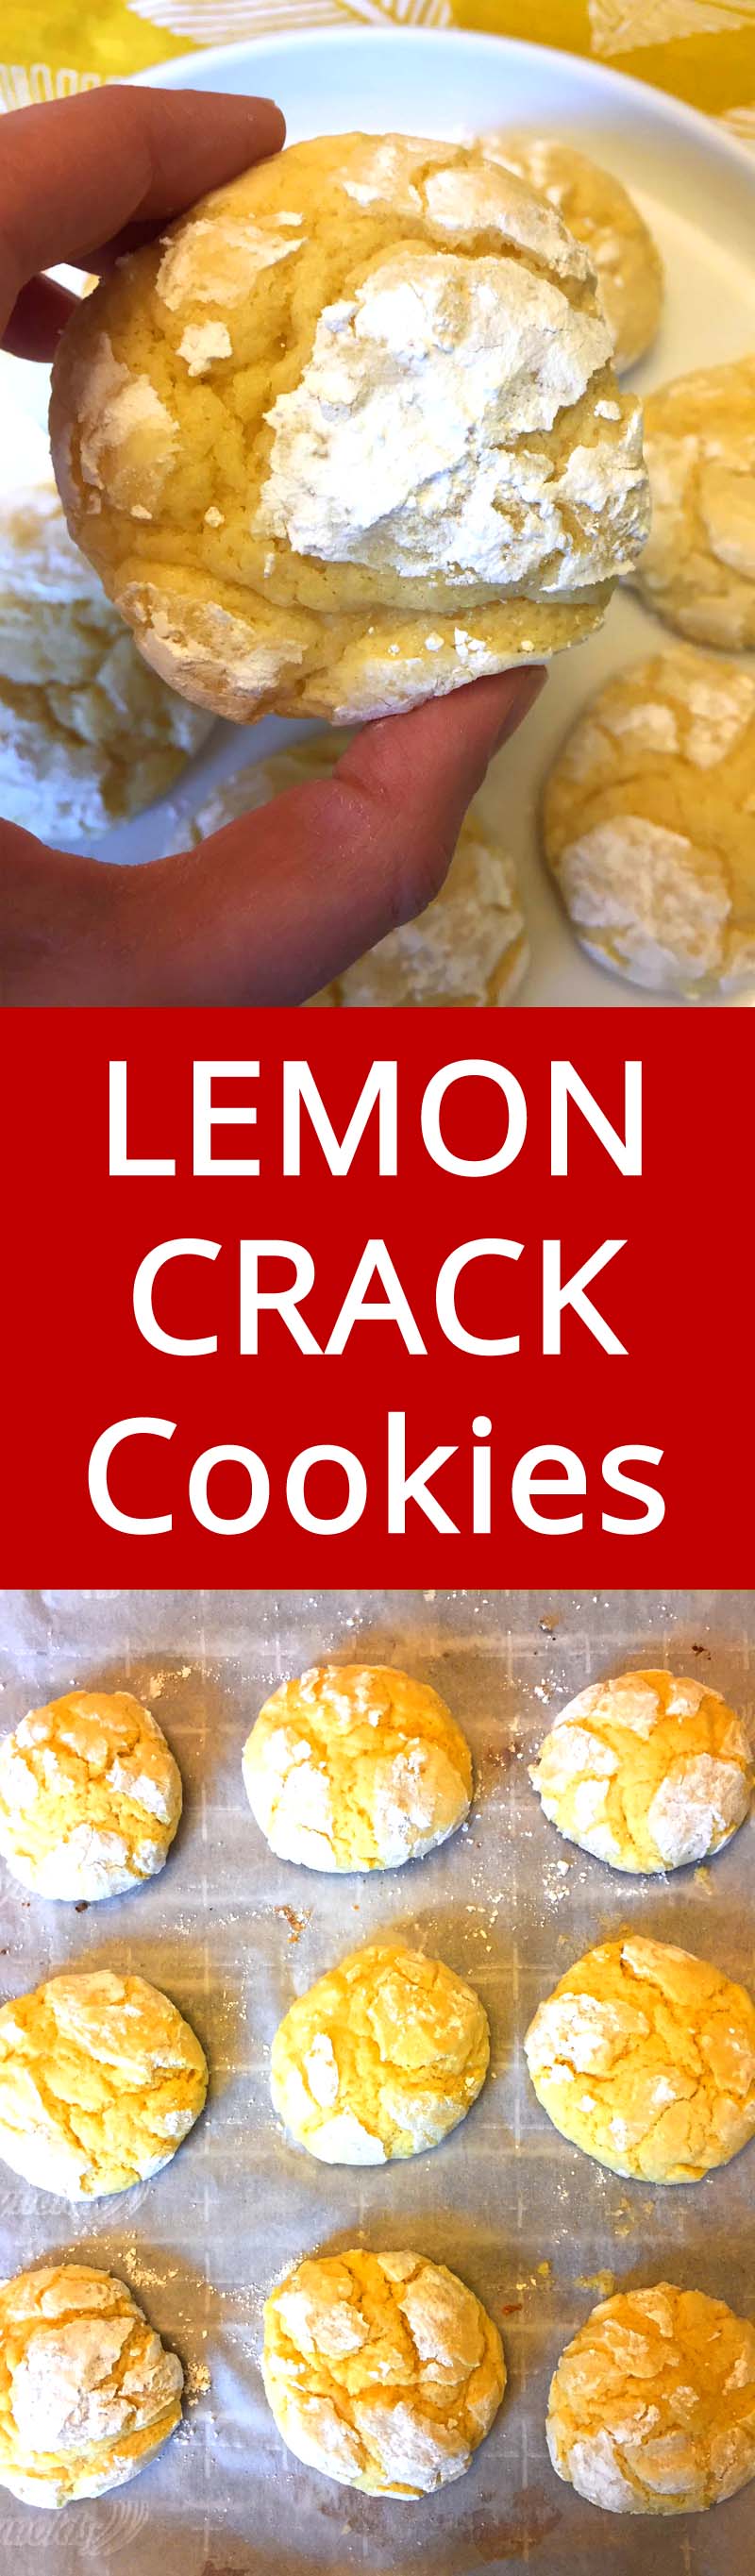 Easy Lemon Crack Crinkles Cookies Recipe – Best Ever ...